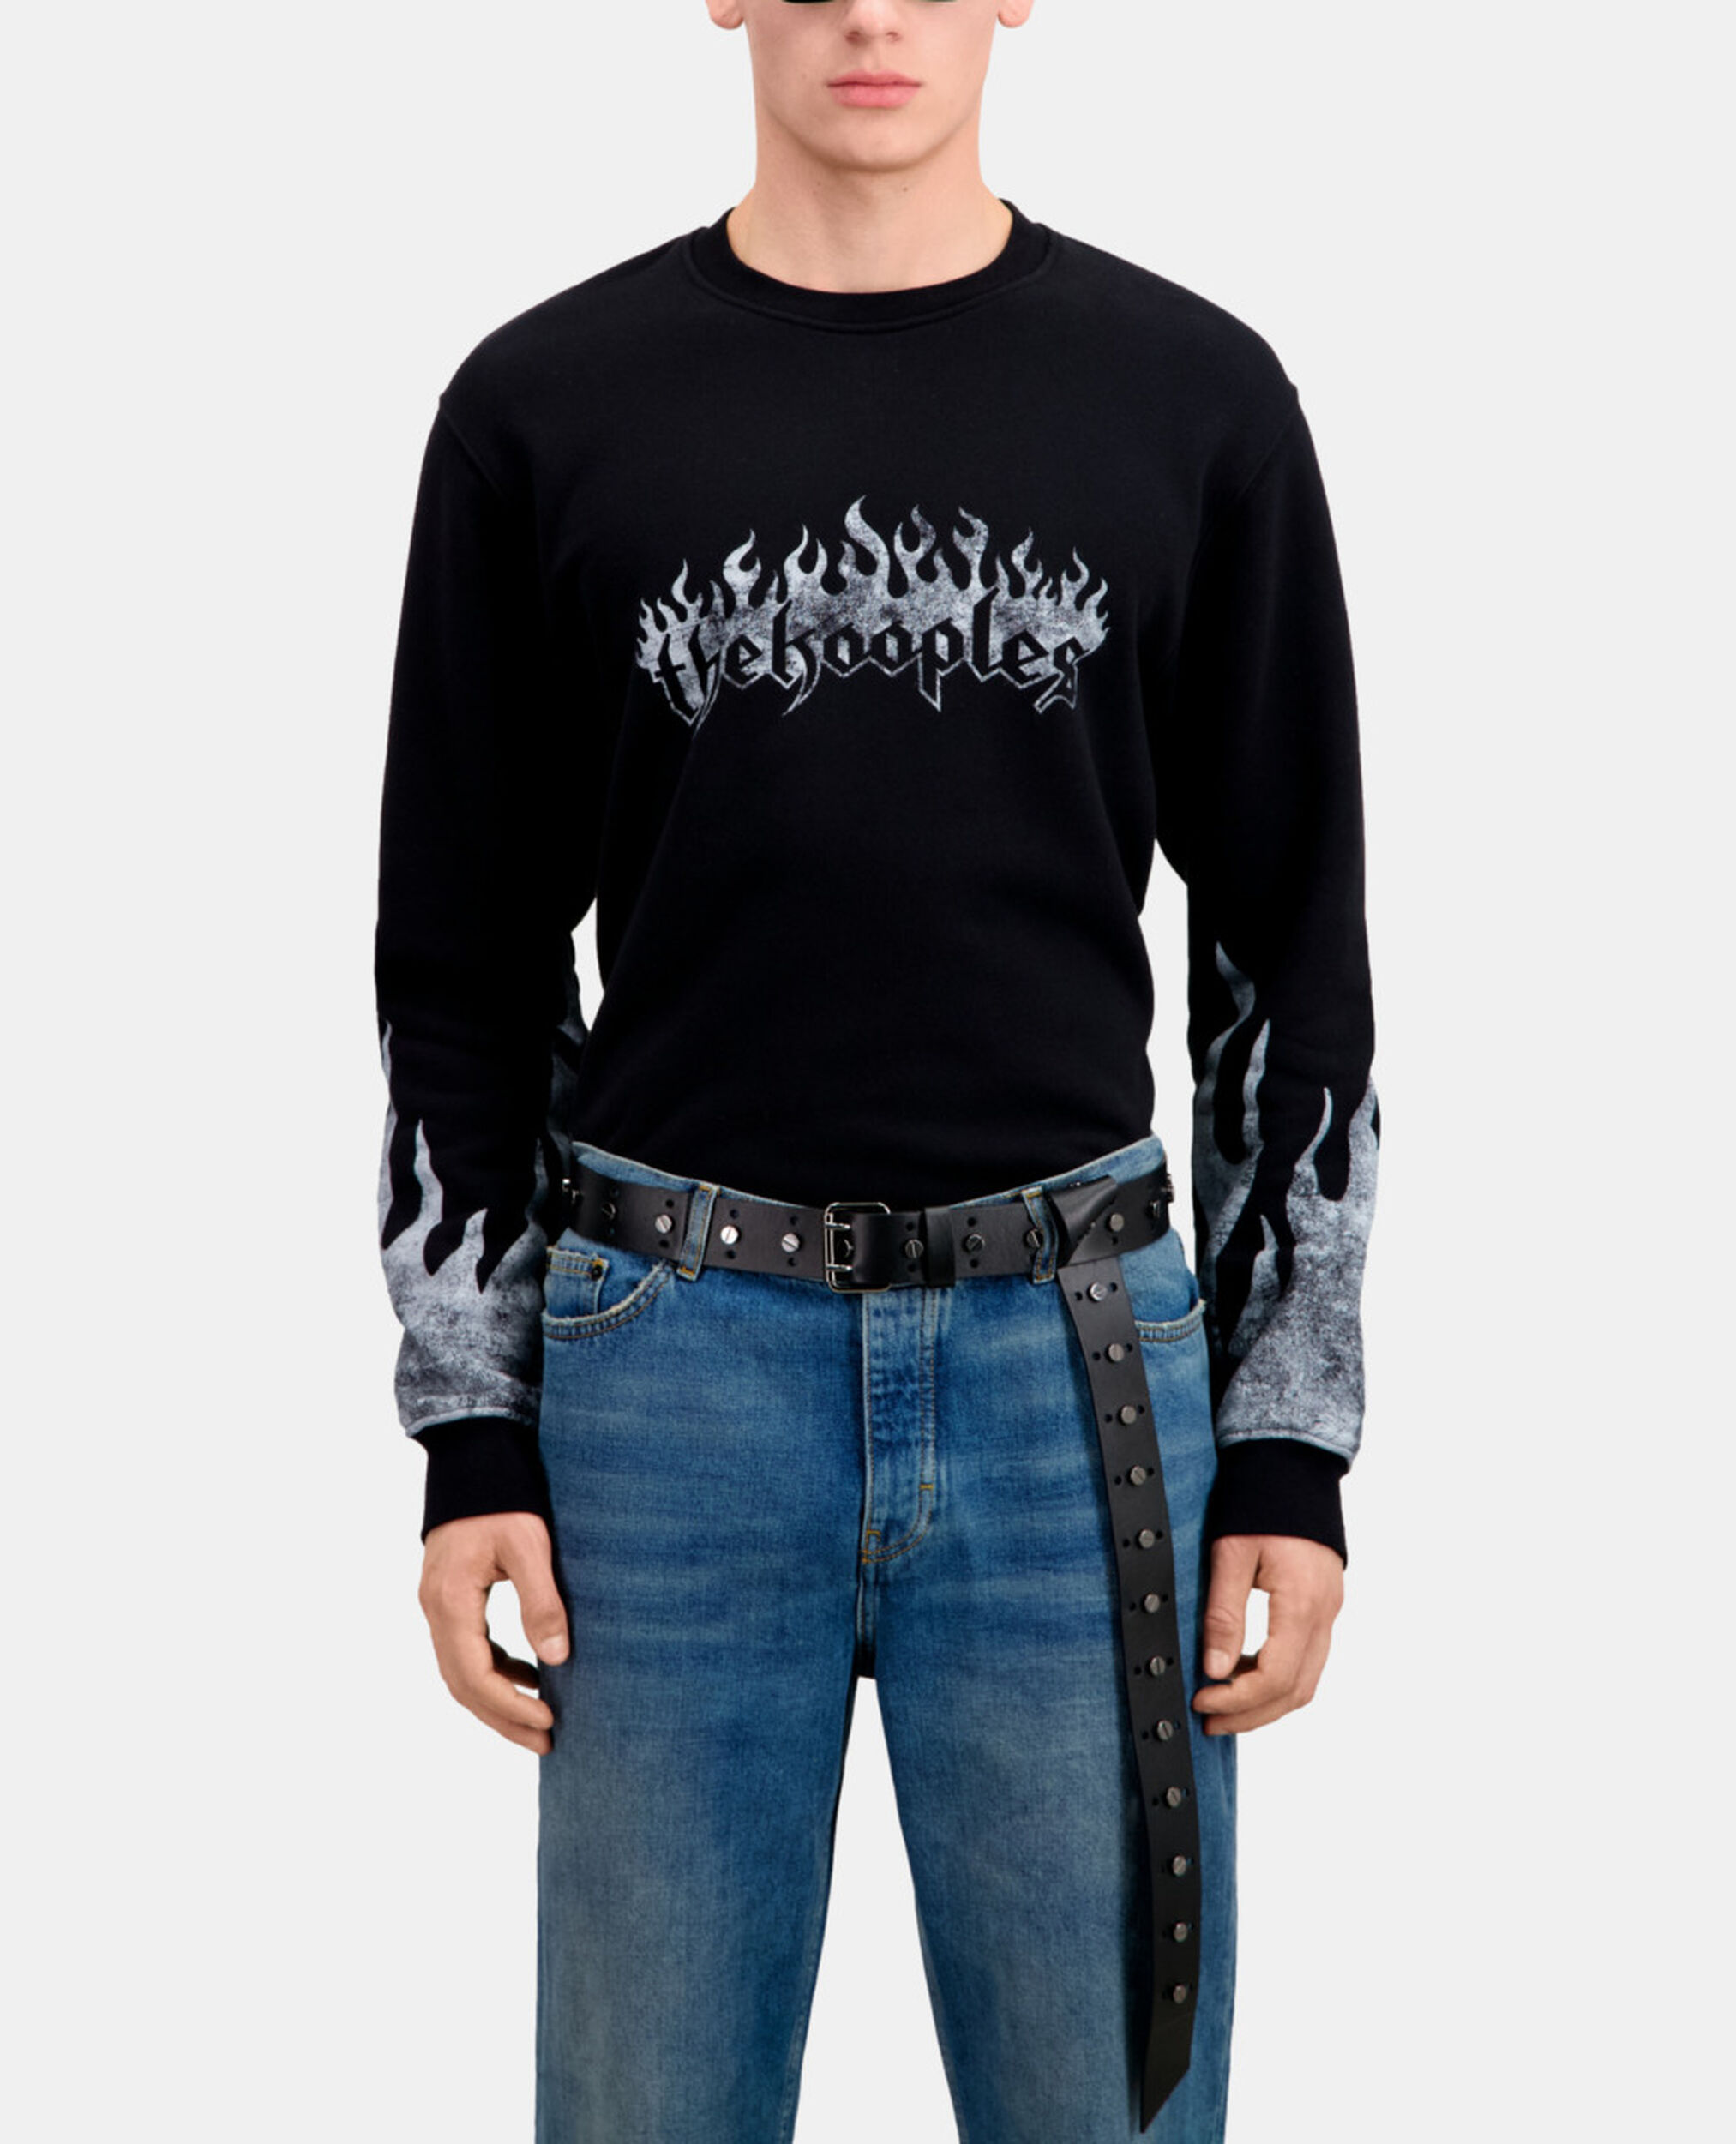 Sweatshirt Homme noir avec sérigraphie Kooples on fire, BLACK, hi-res image number null